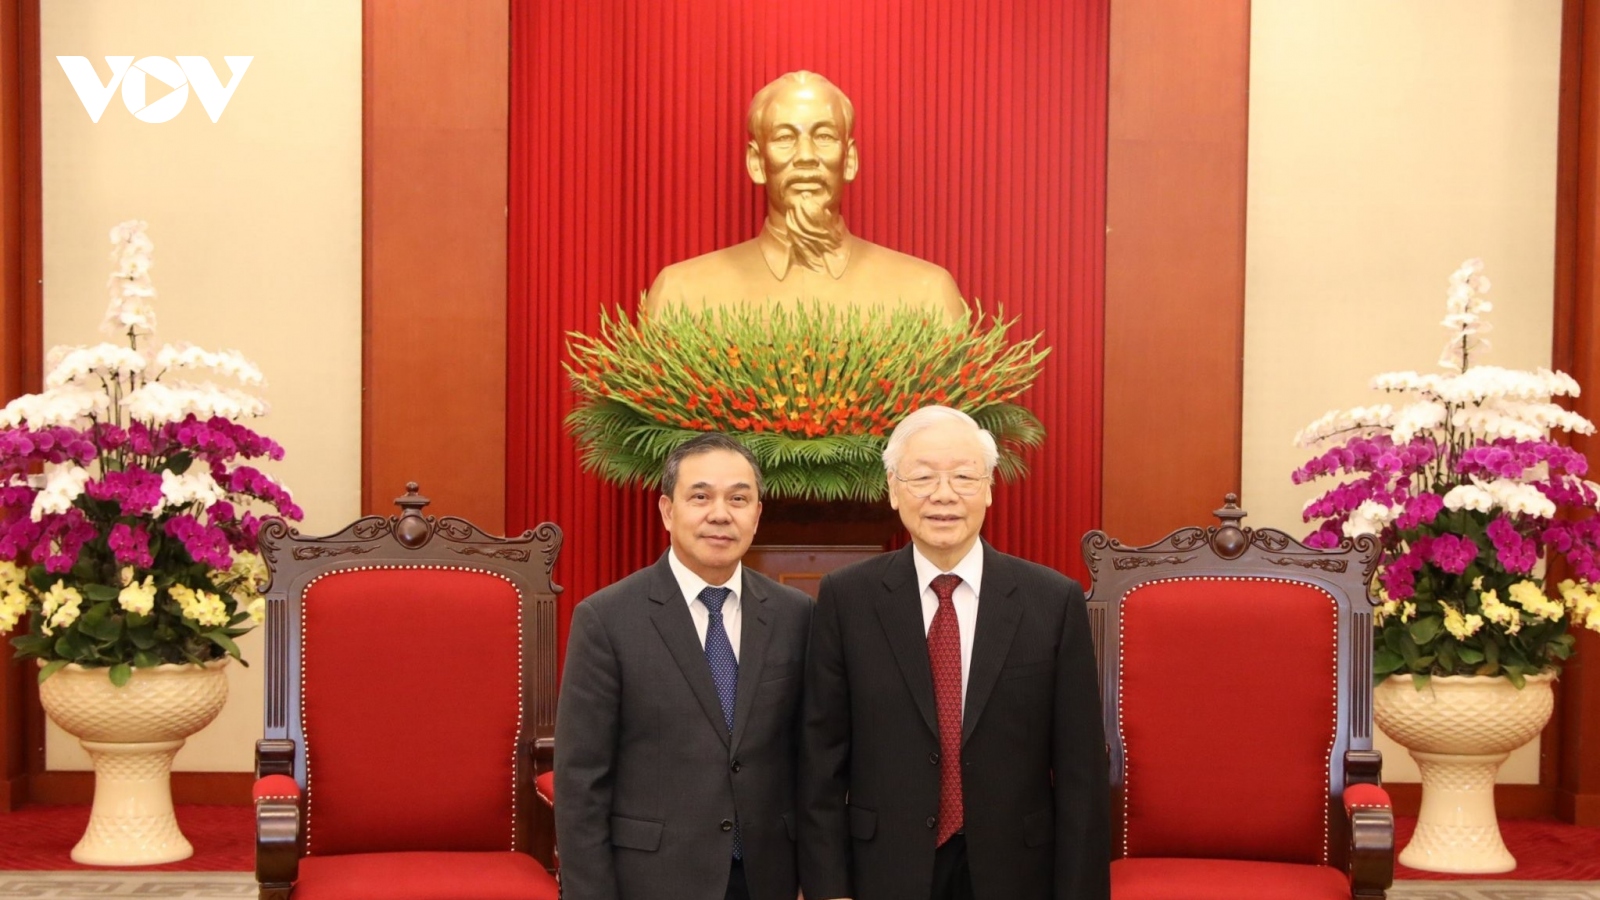 Tổng Bí thư Nguyễn Phú Trọng tiếp Đại sứ Lào tại Việt Nam